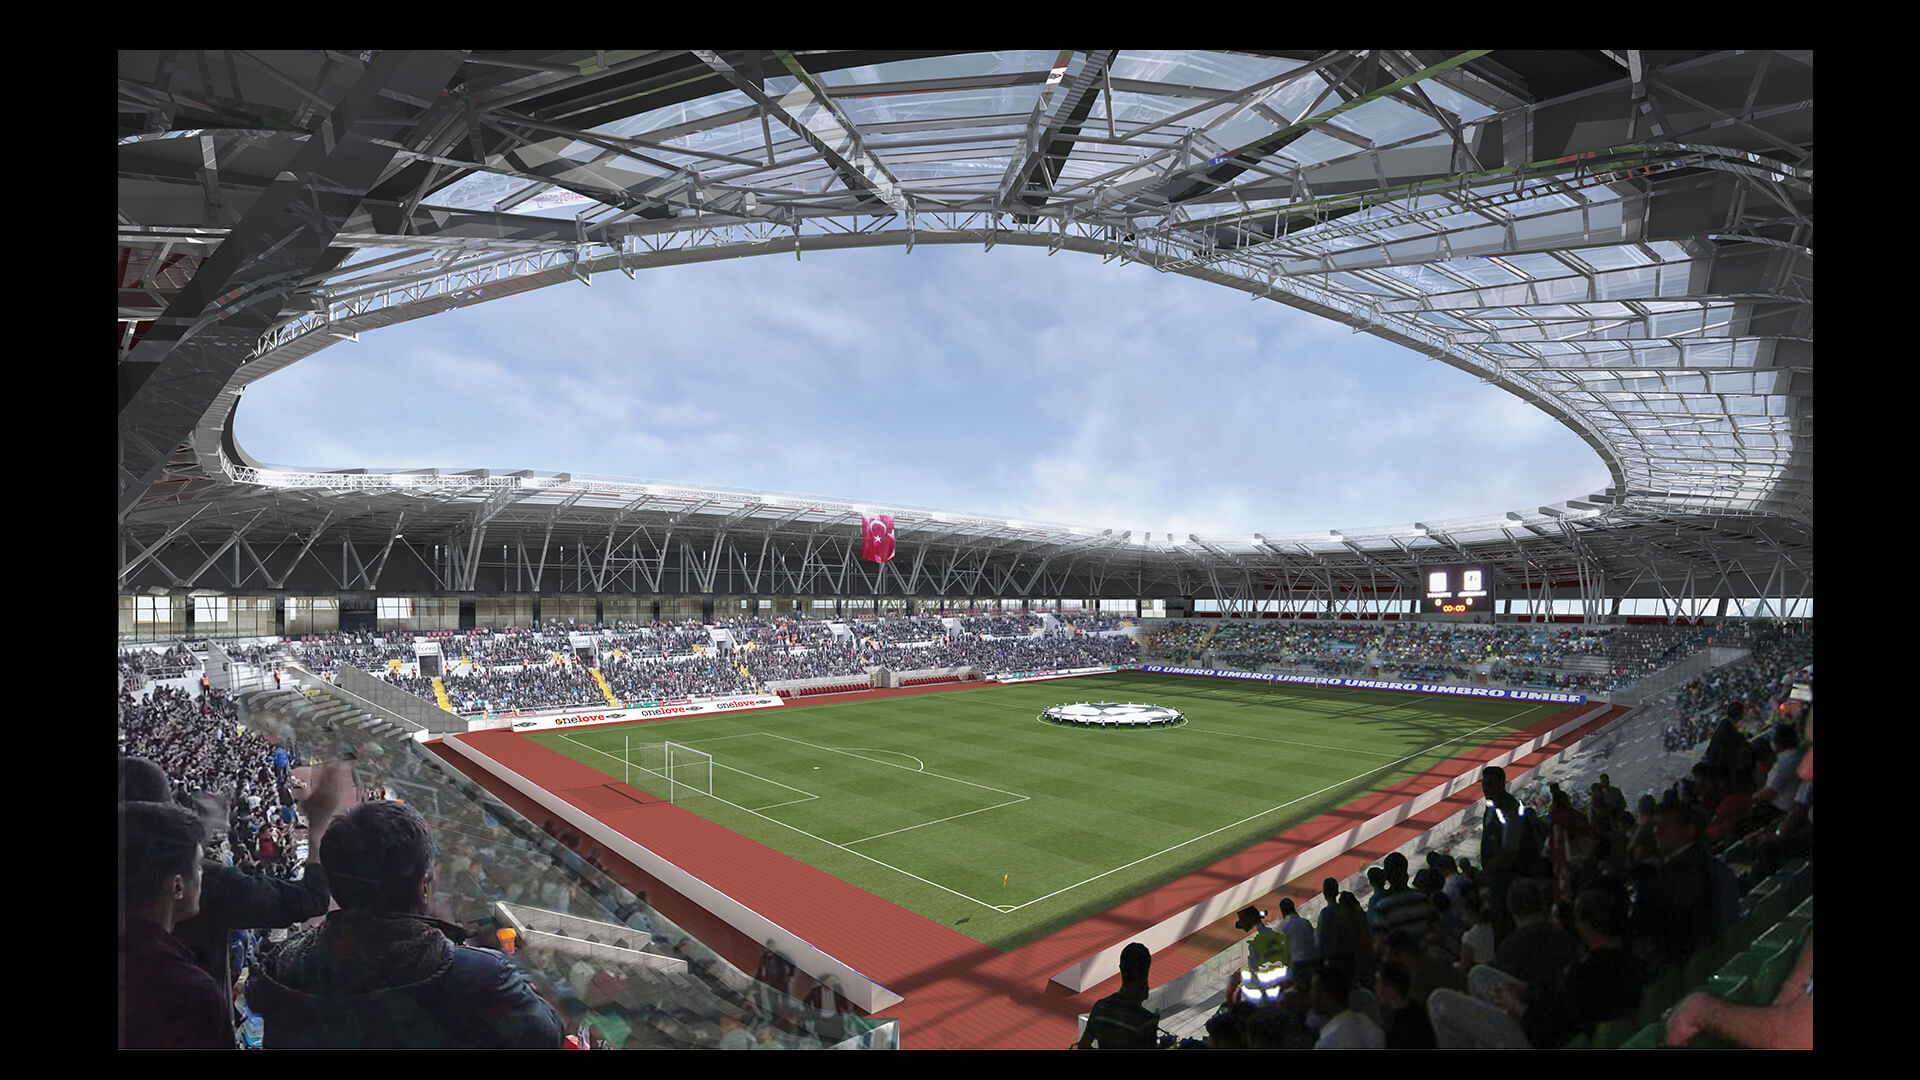 Karaman Stadyumu (12.500 Kapasite)